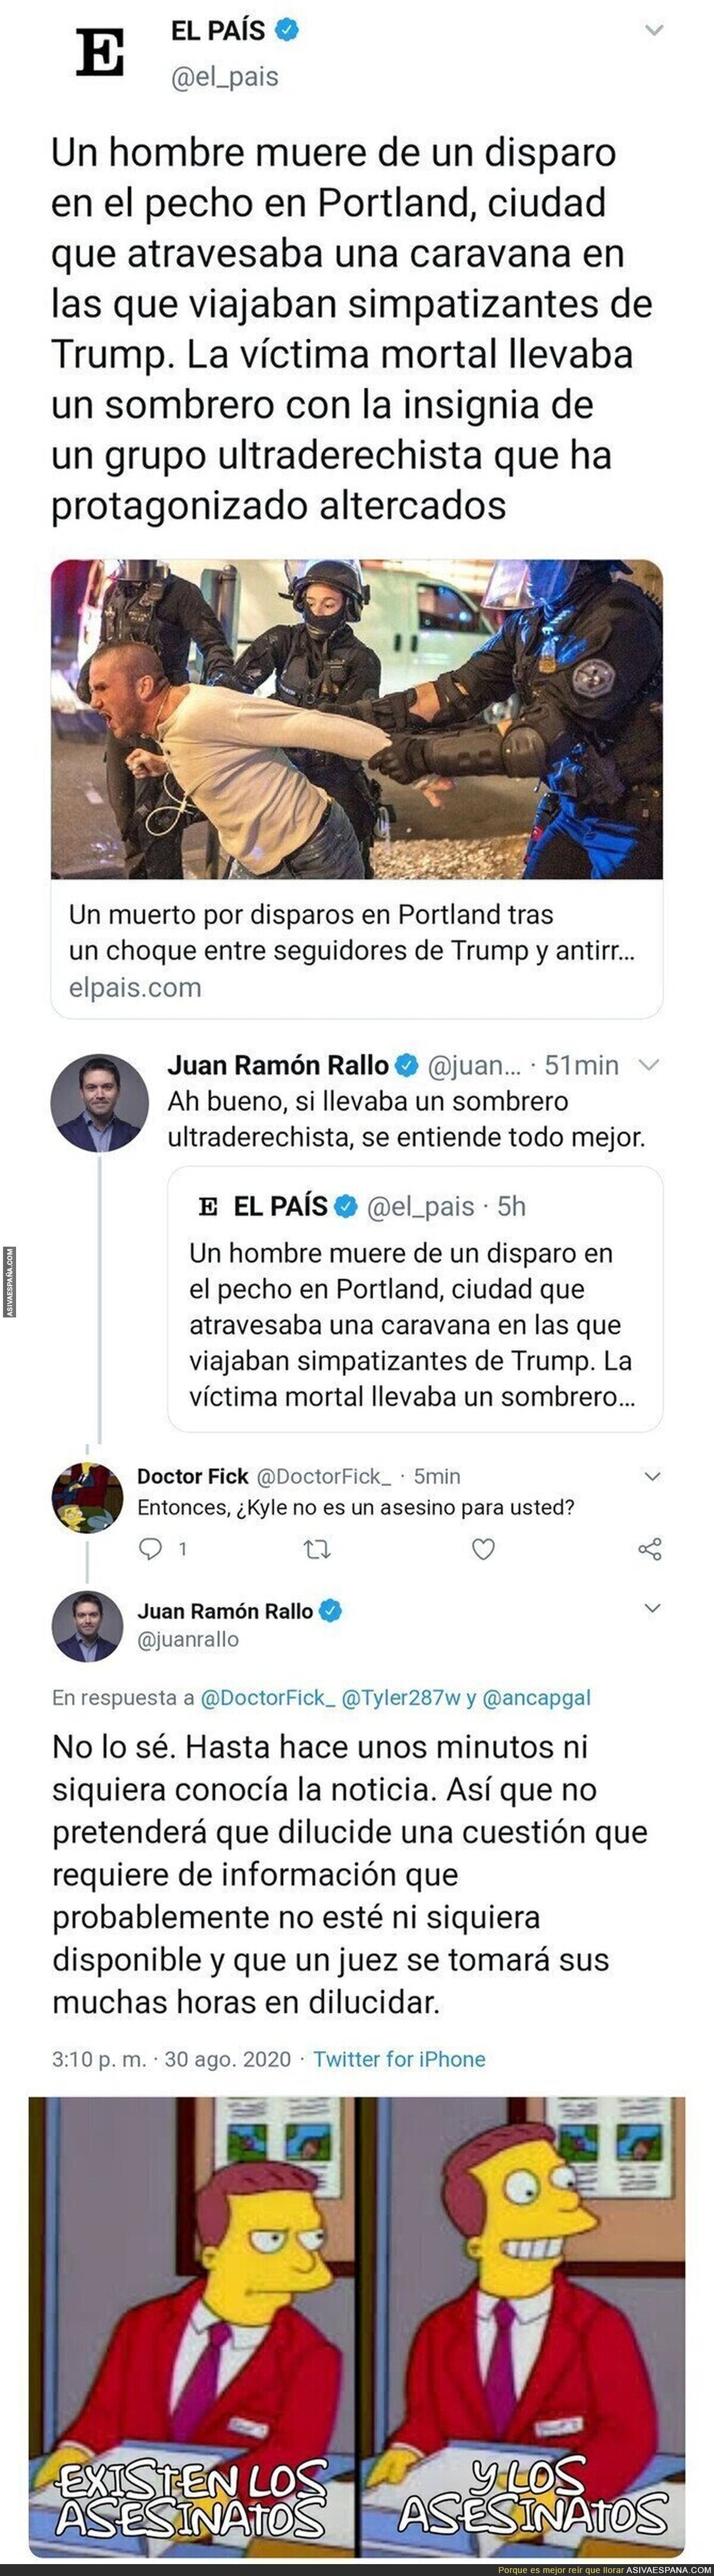 Juan Ramón Rallo necesita su tiempo para juzgar un asesinato